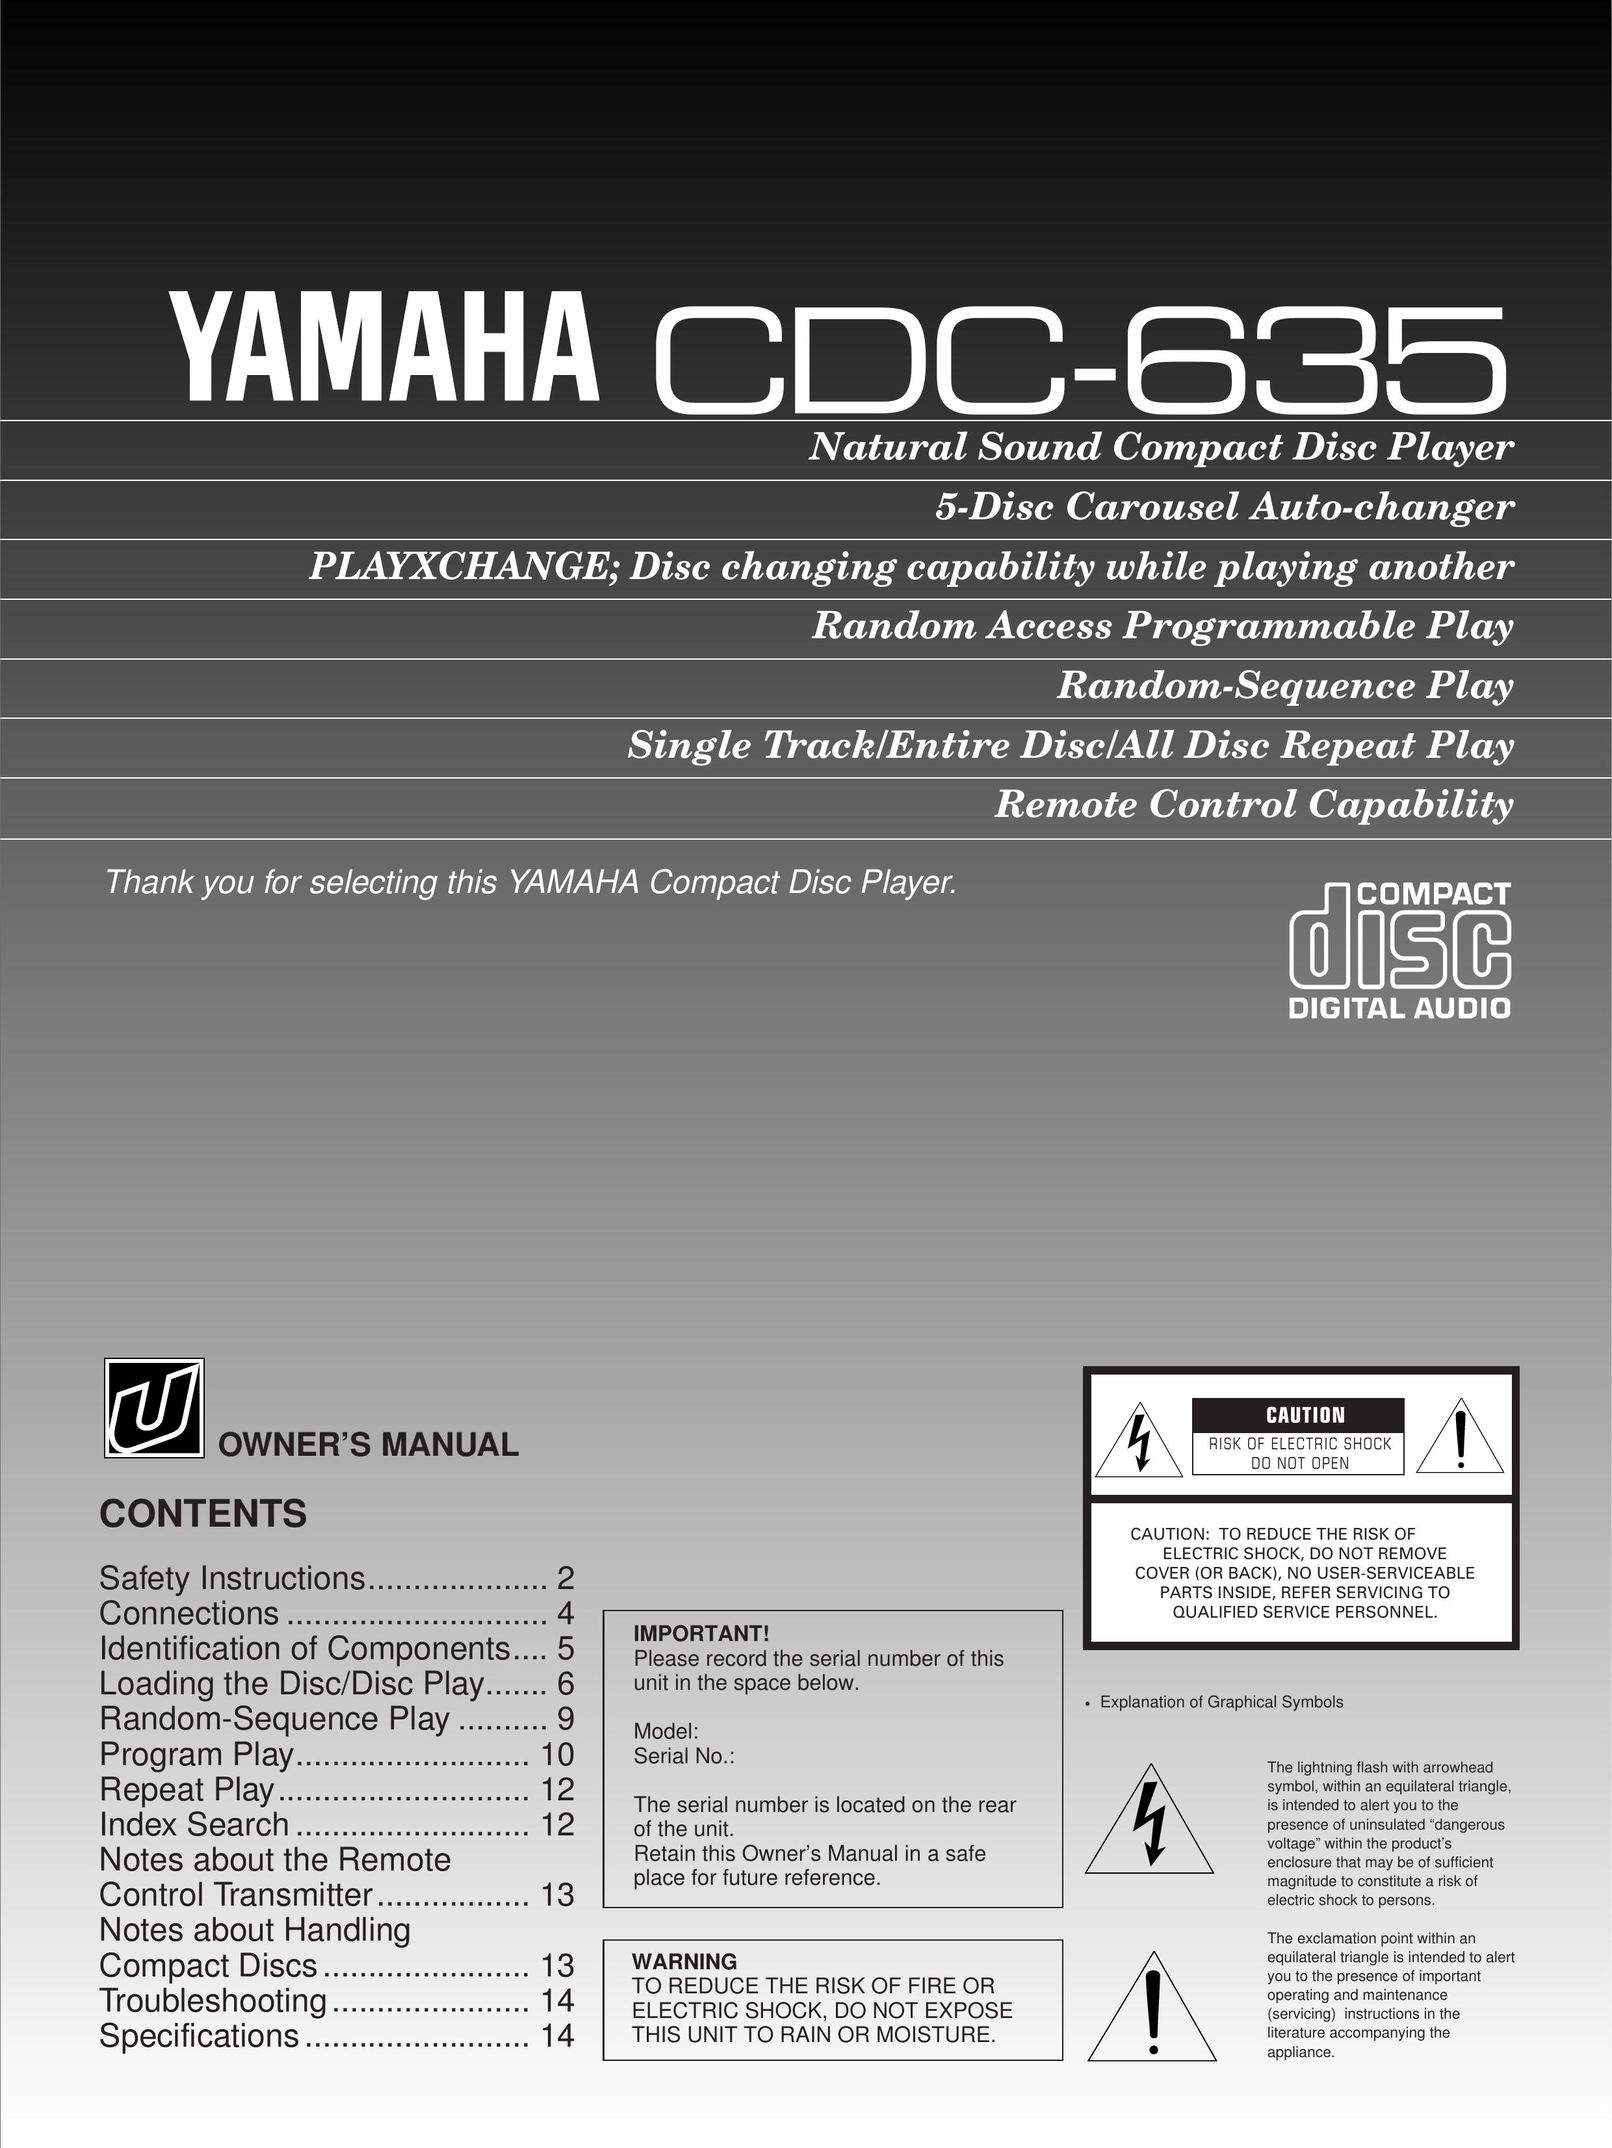 Yamaha CDC-635 CD Player User Manual